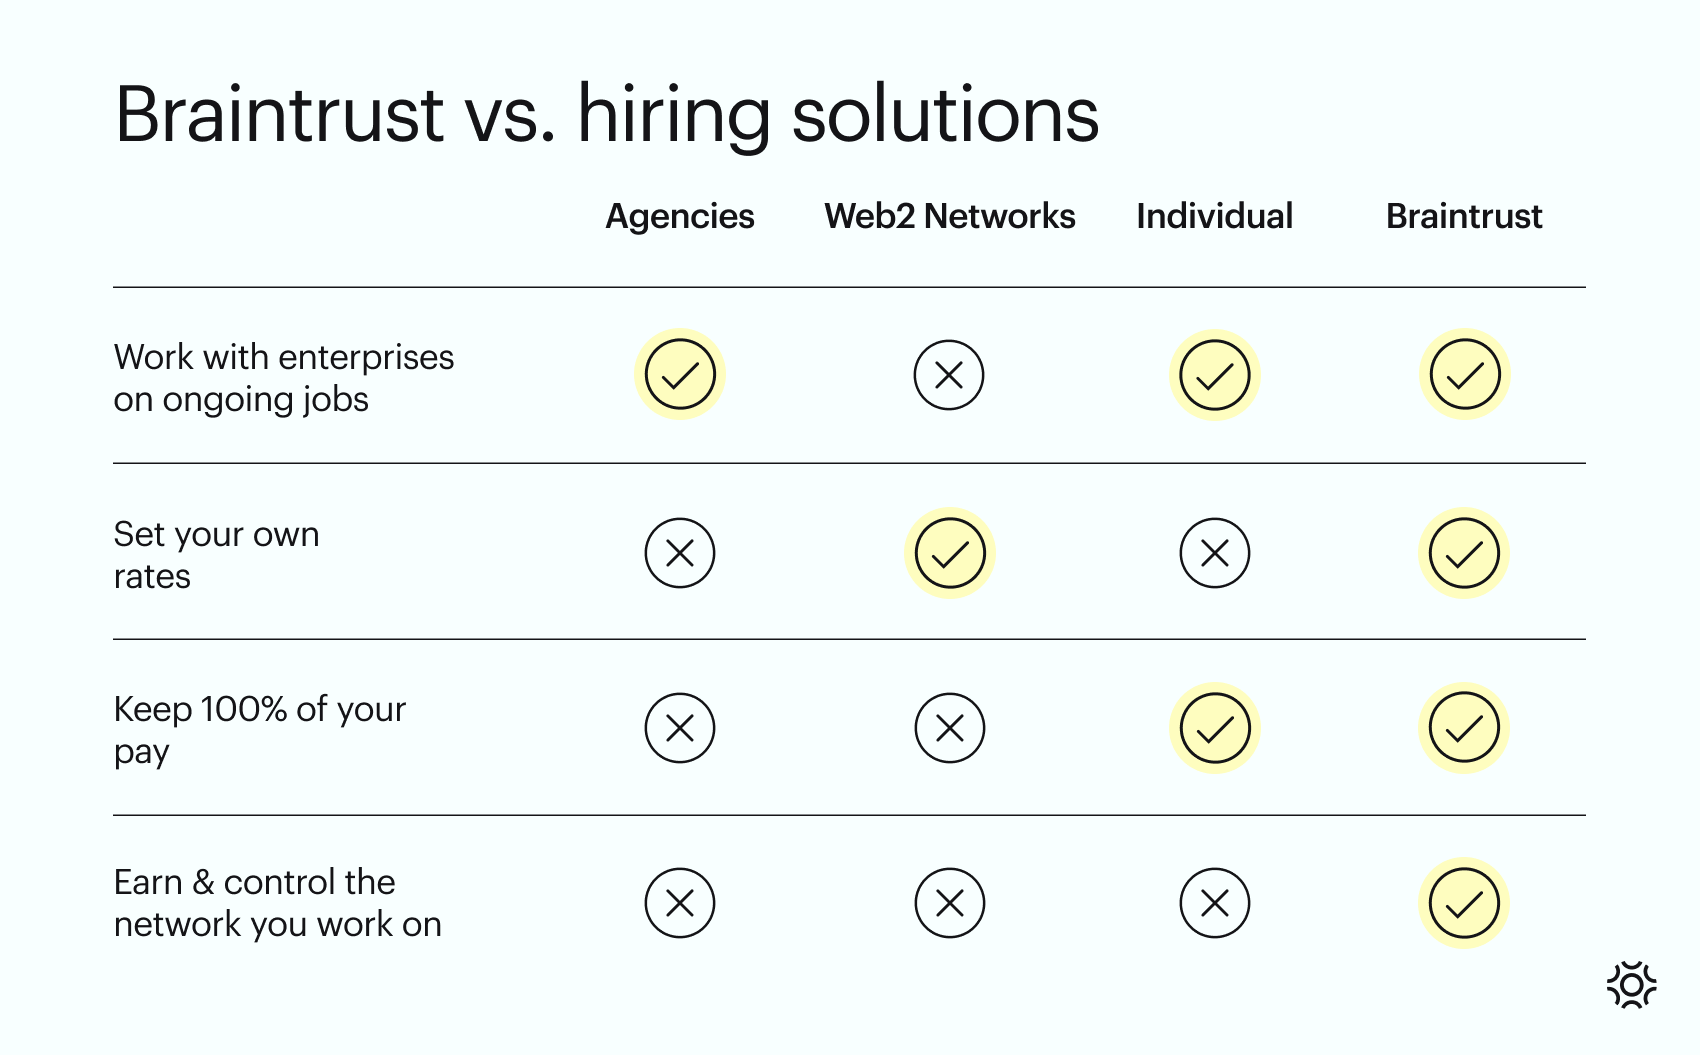 Braintrust vs hiring solutions